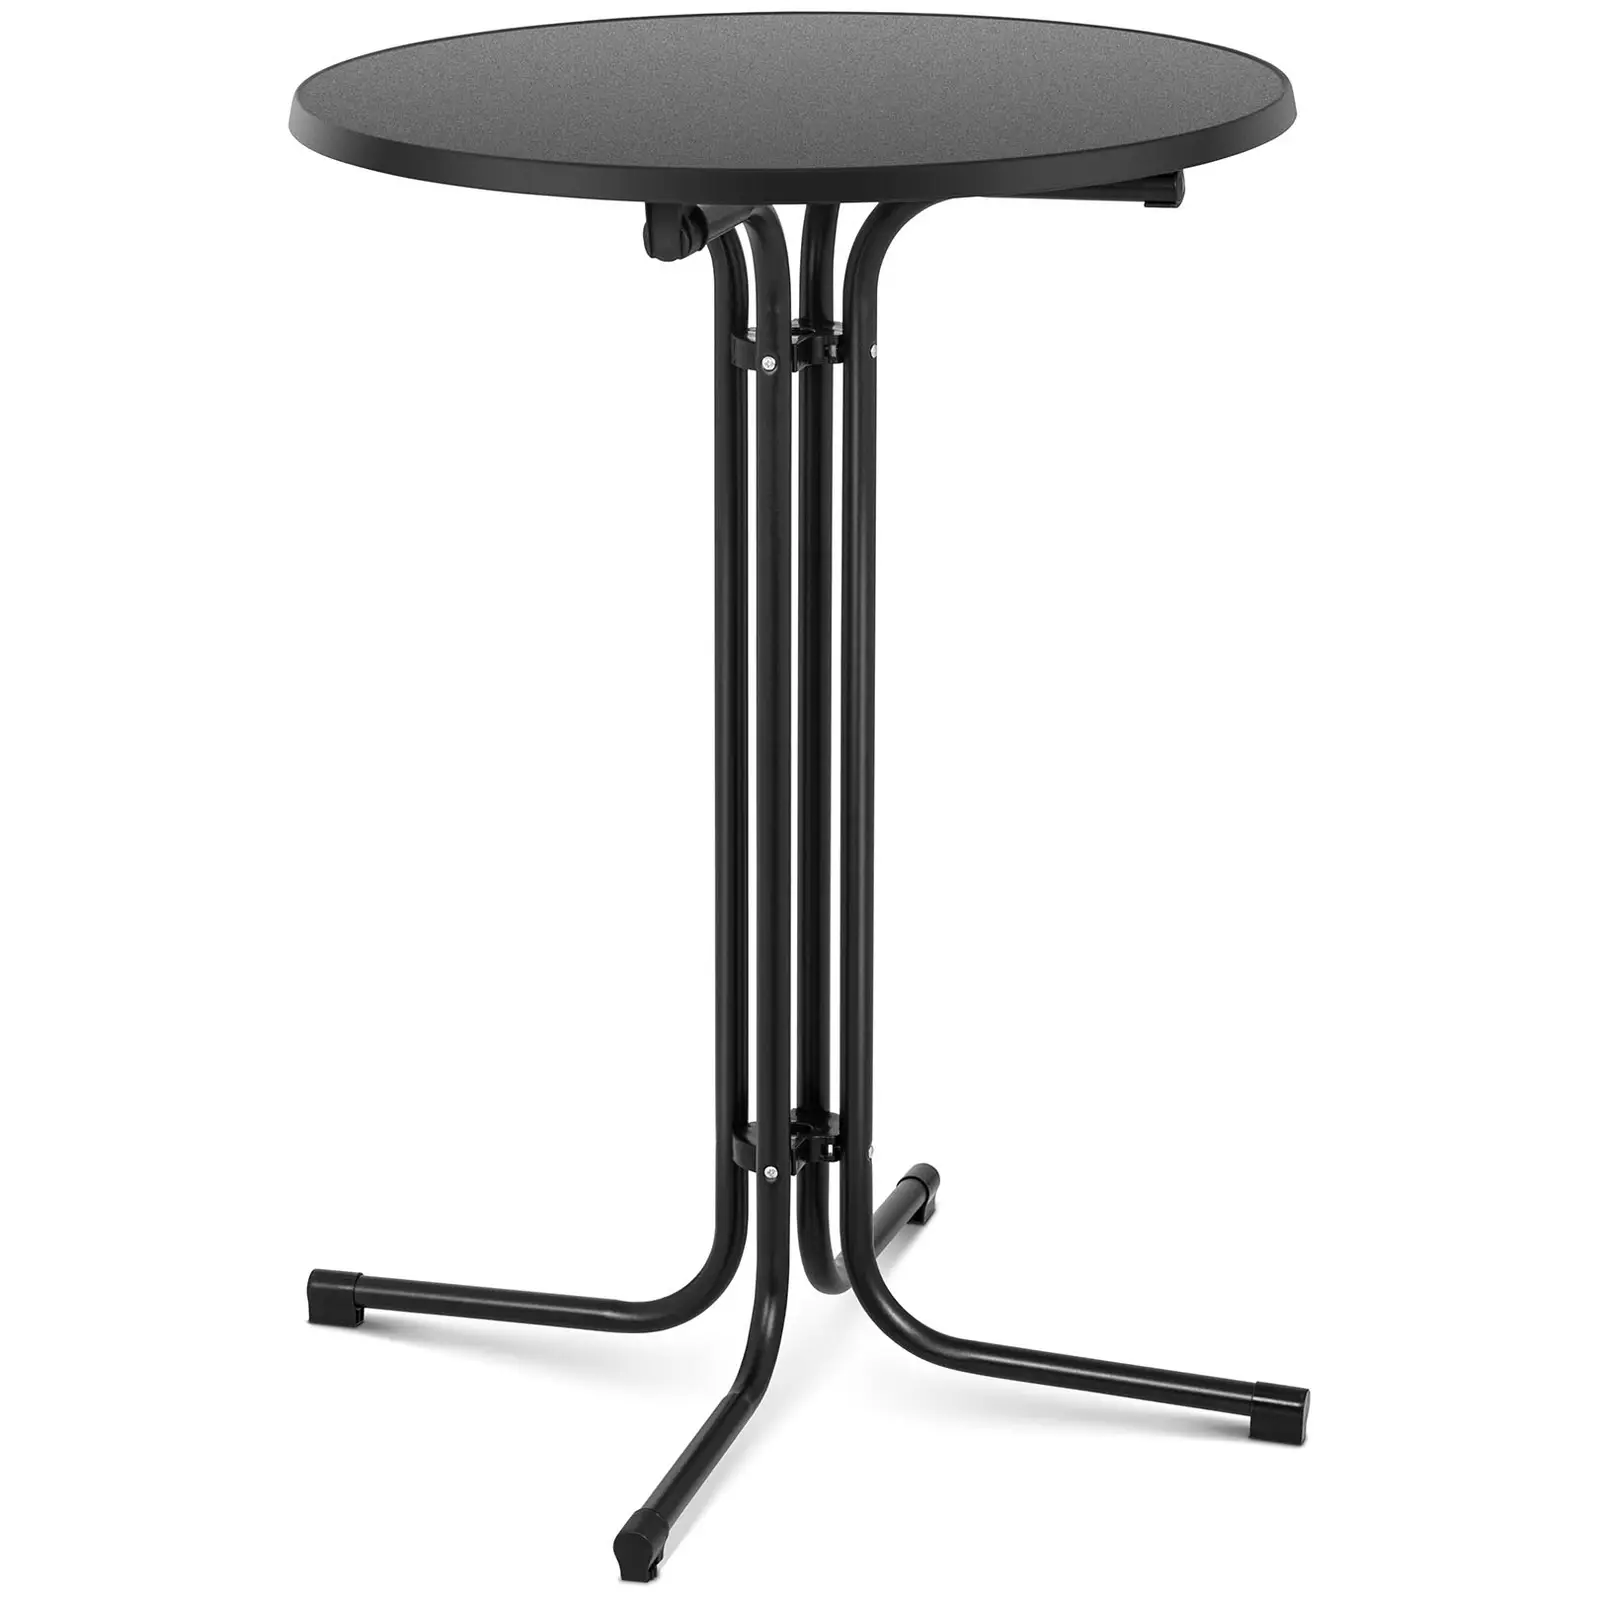 Koktejlový stůl Ø 80 cm skládací černý - Skládací stoly Royal Catering